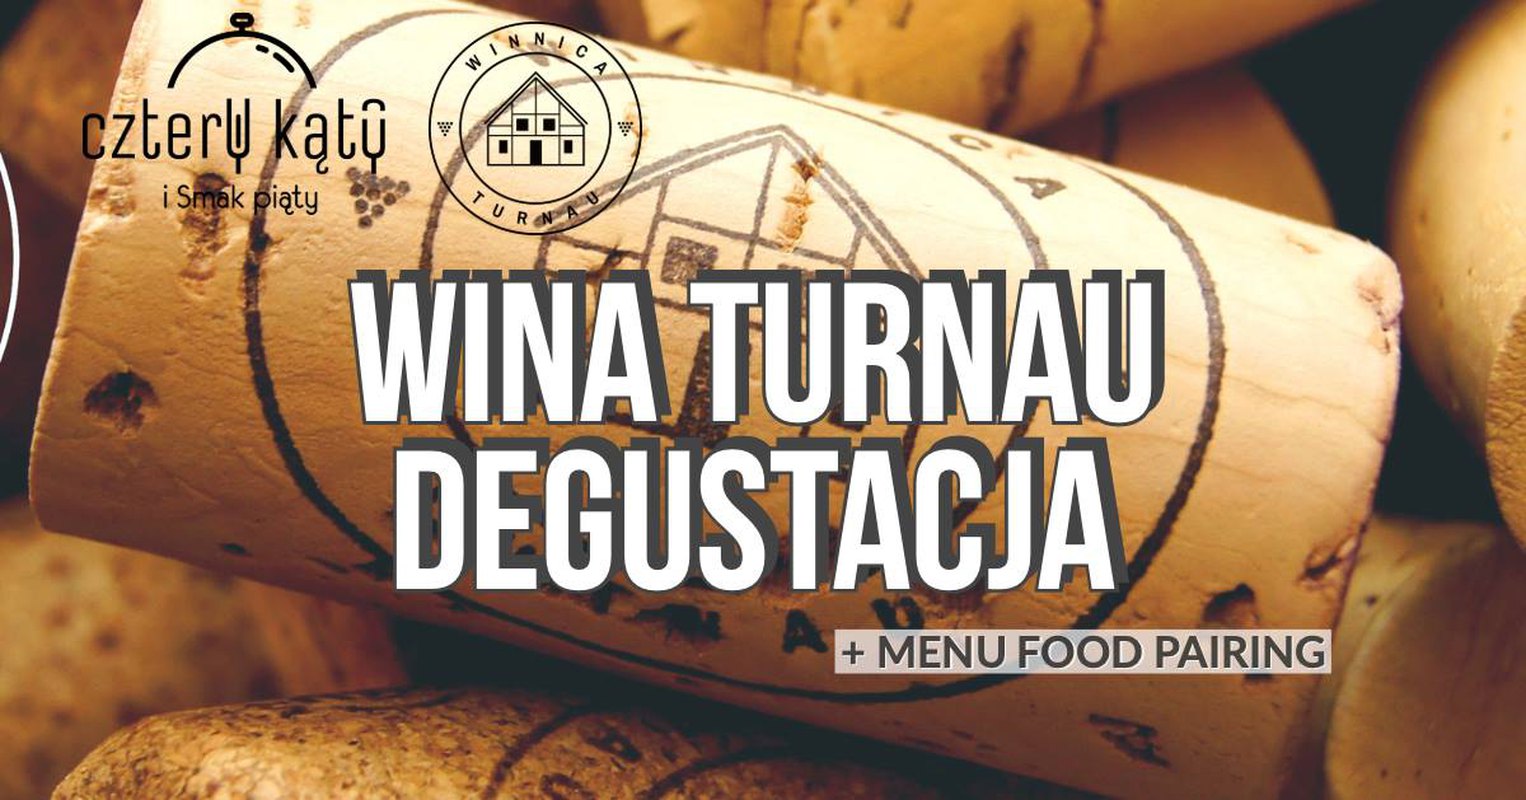 Degustacja wina z Winnicy Turnau + autorskie menu Cztery kąty